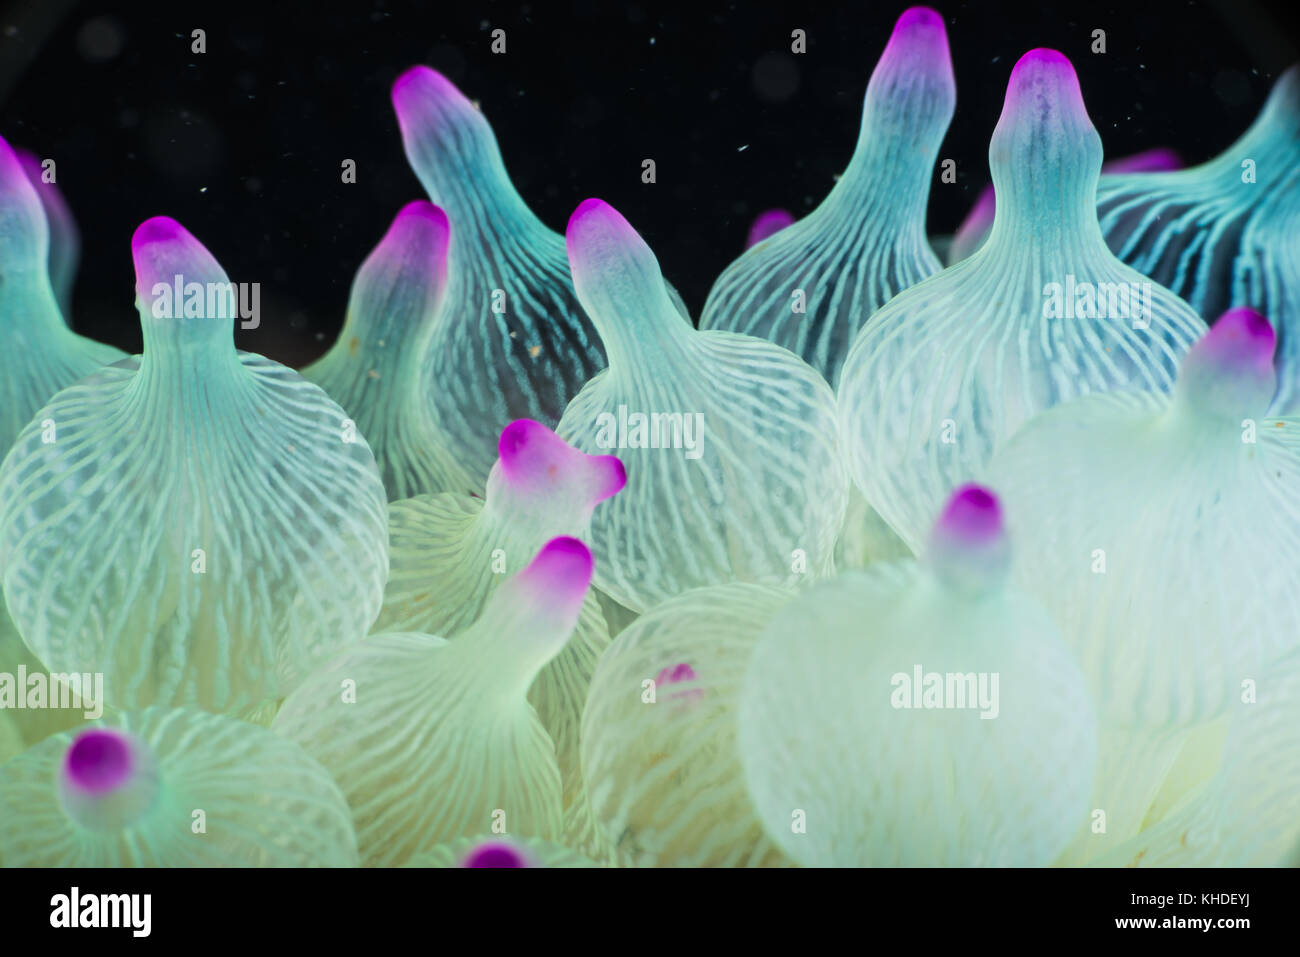 fluorescent sea anemone, Entacmaea quadricolor (Leuckart in Rüppell & Leuckart, 1828). Owase, Mie, Japan Stock Photo